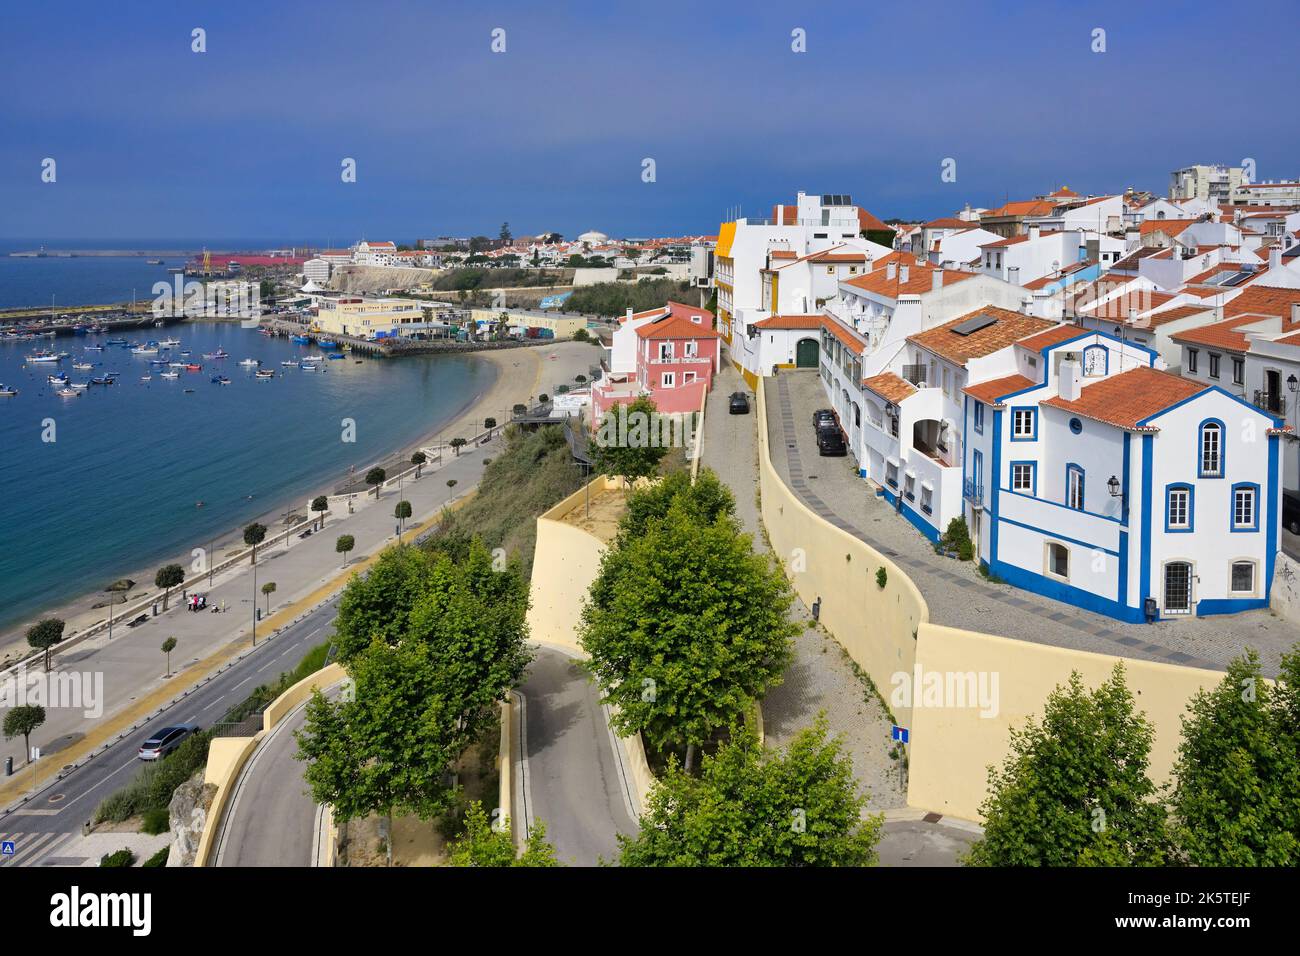 Vue panoramique sur le centre-ville historique, le port et l'océan Atlantique, Sines, Alentejo, Portugal Banque D'Images